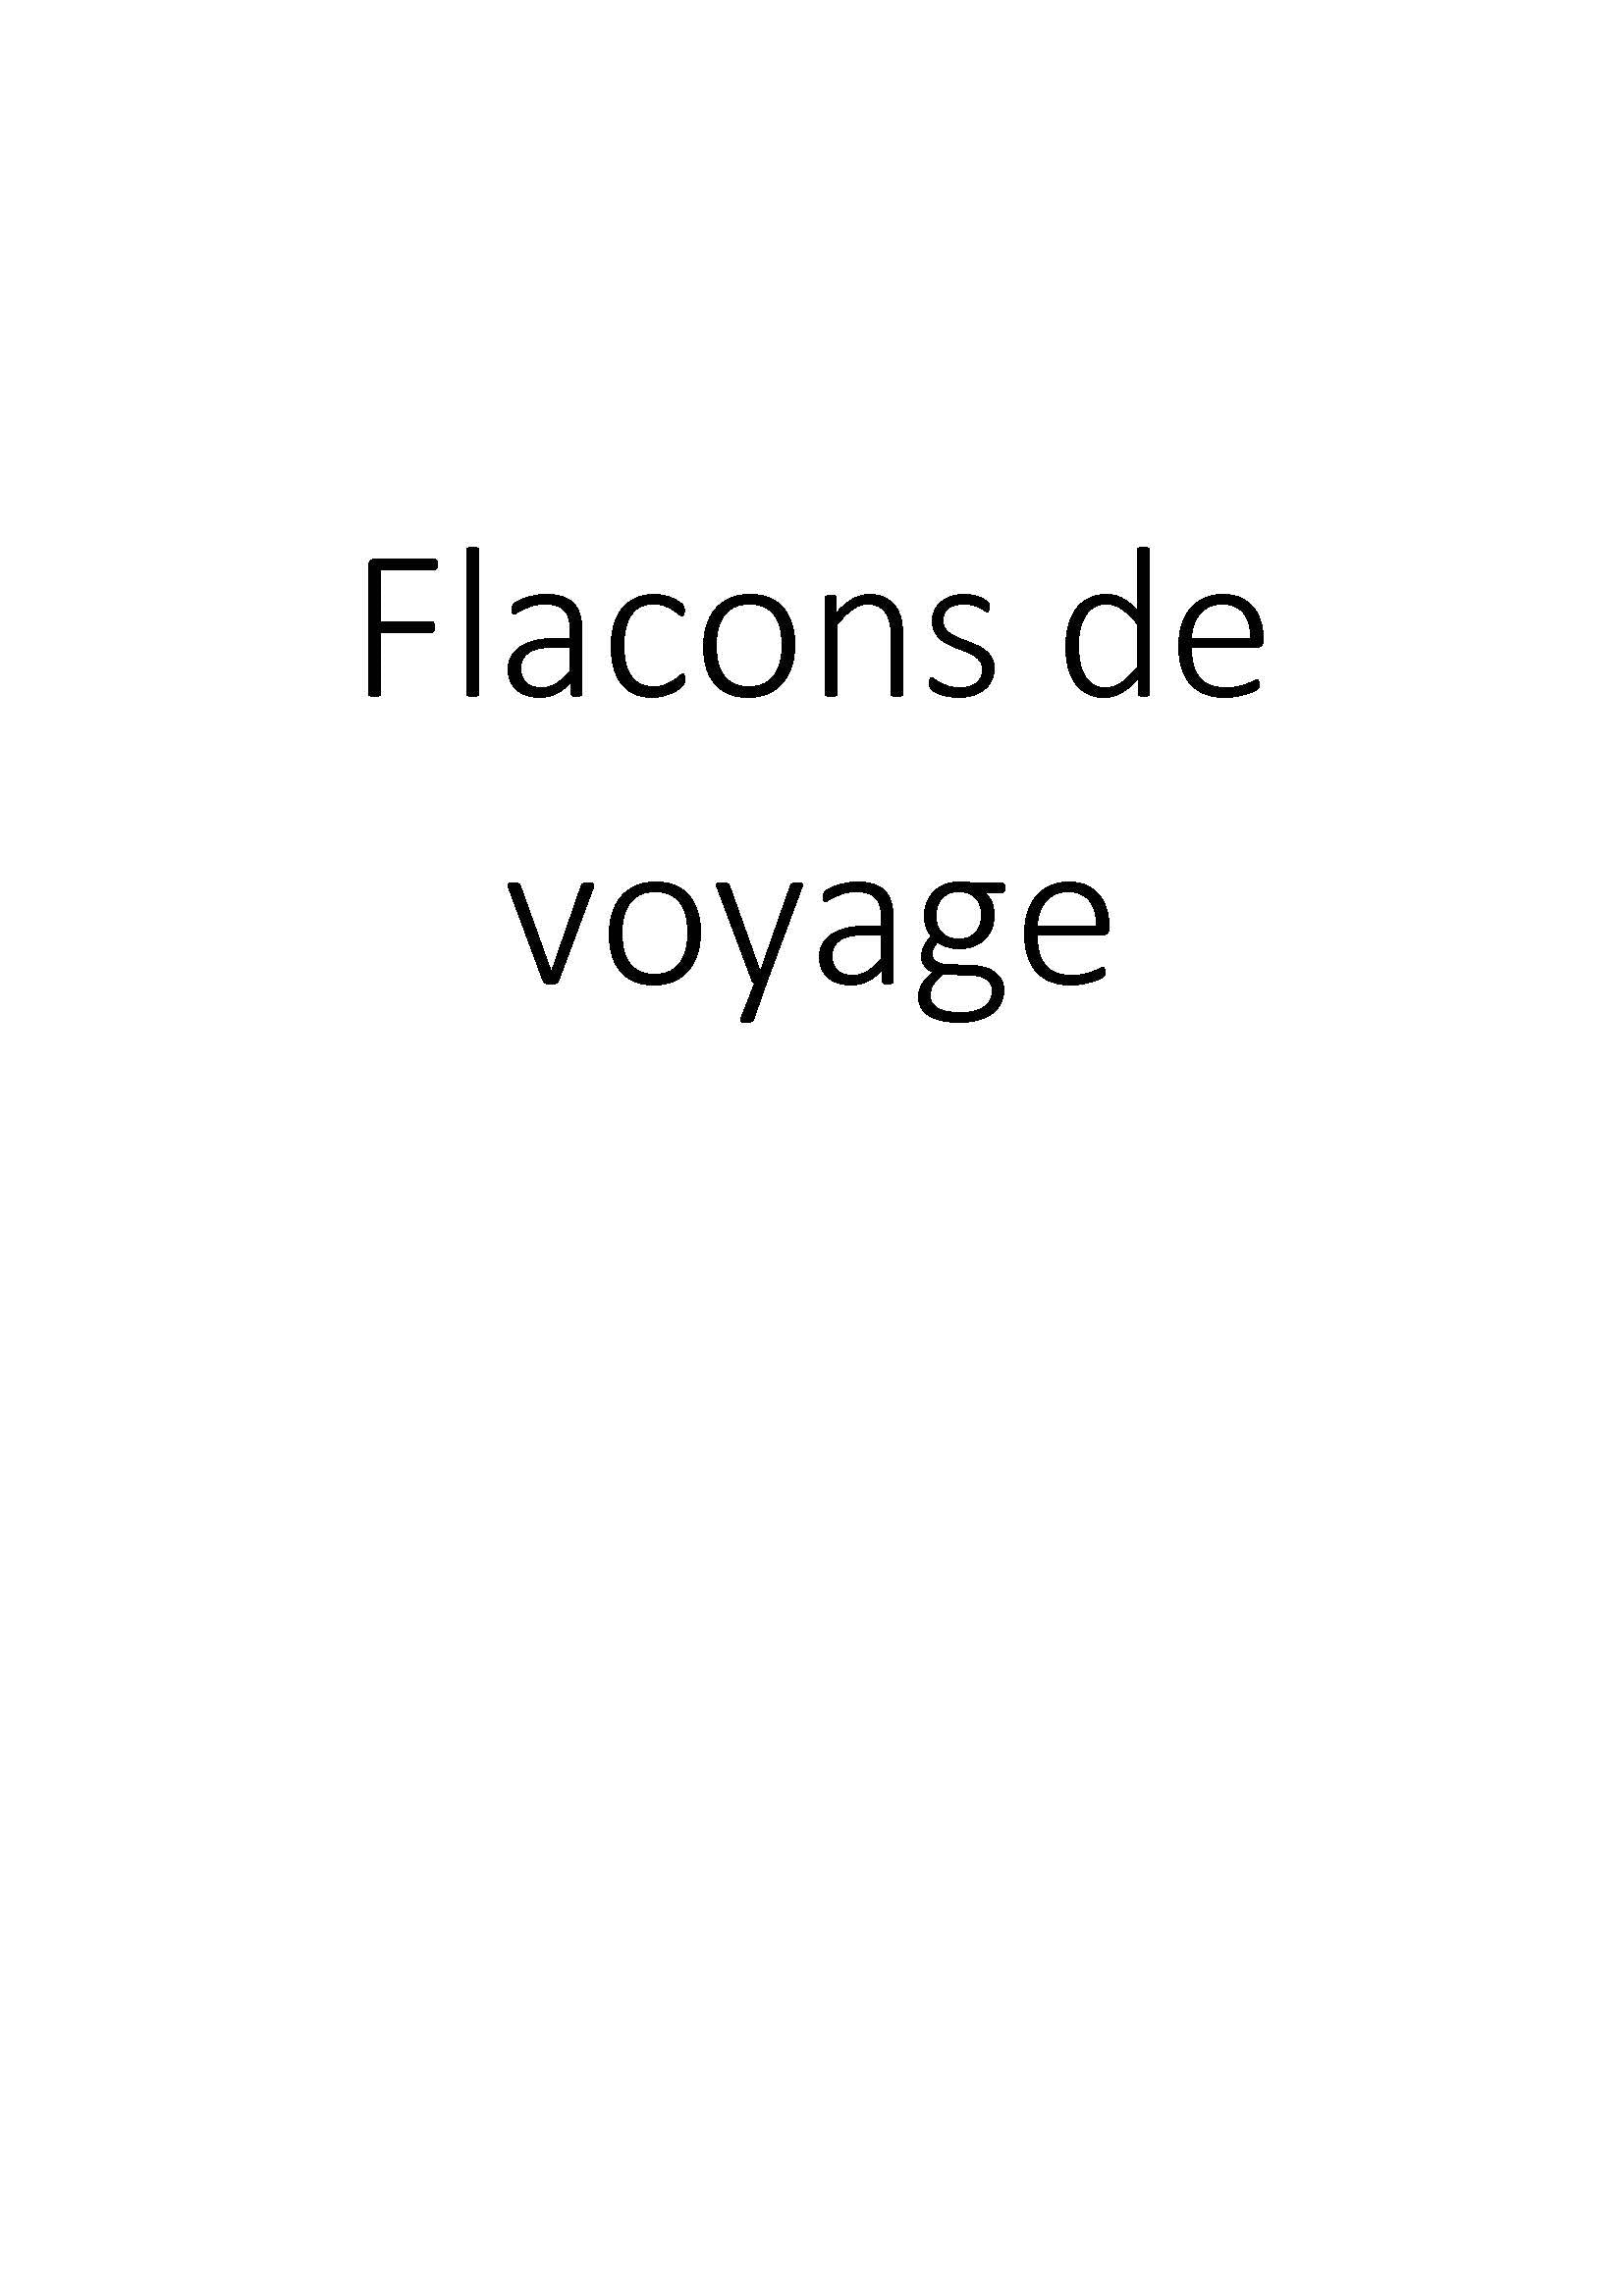 Flacons de voyage clicktofournisseur.com